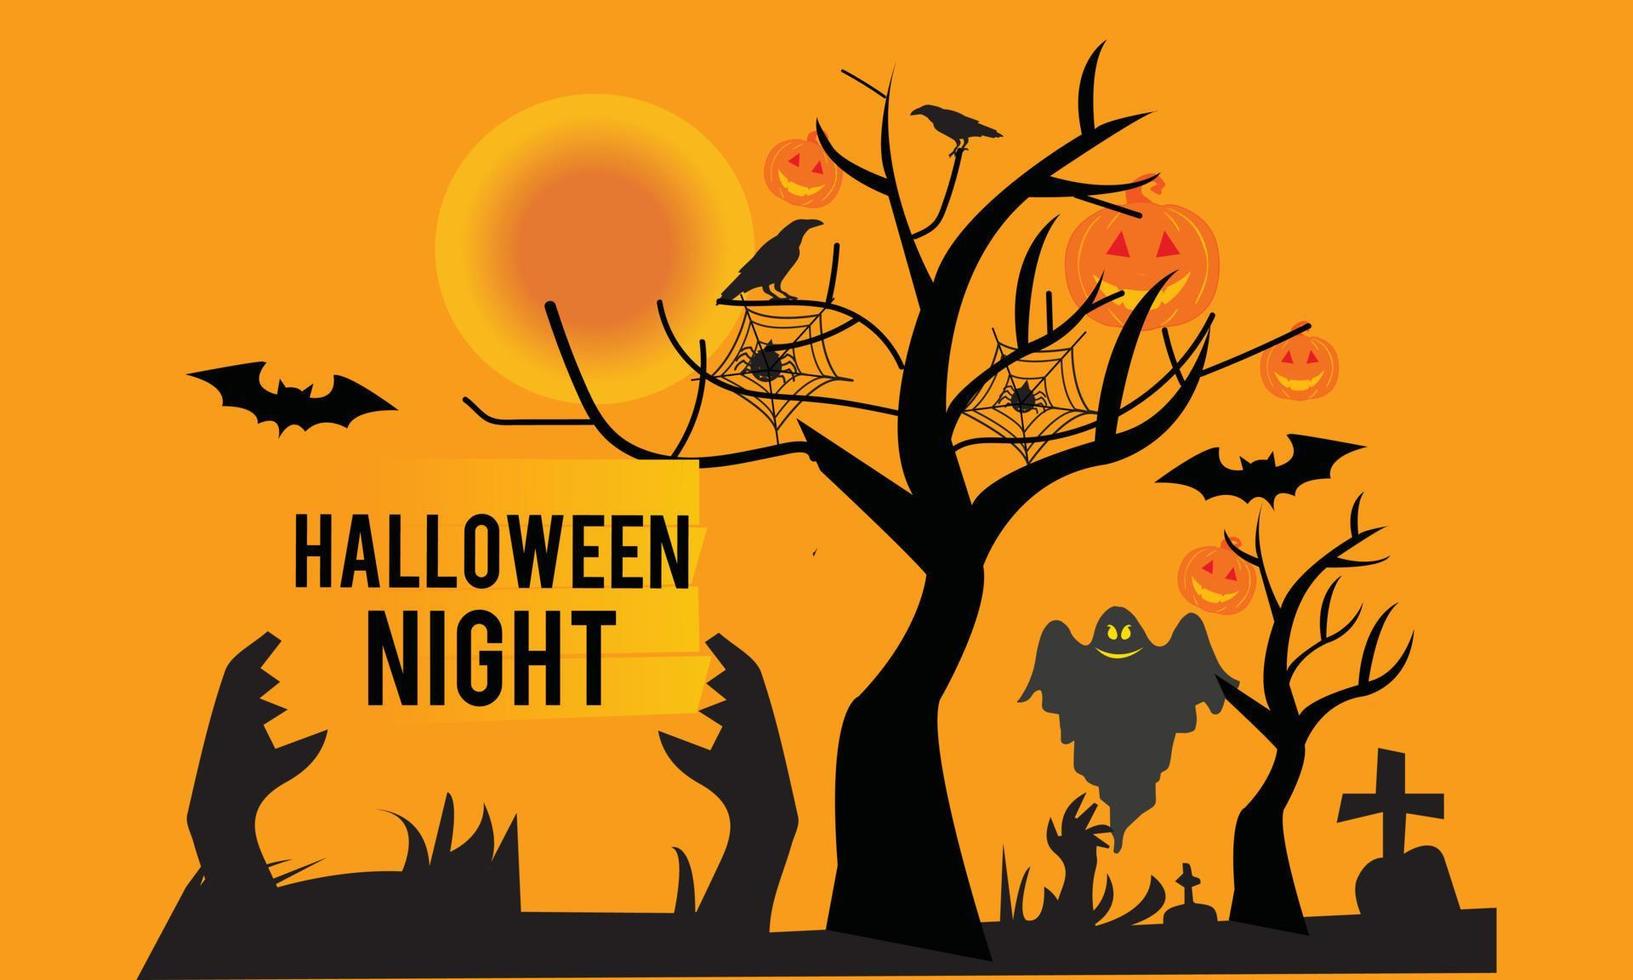 Halloween Night Cemetery Vector illustration scary Night